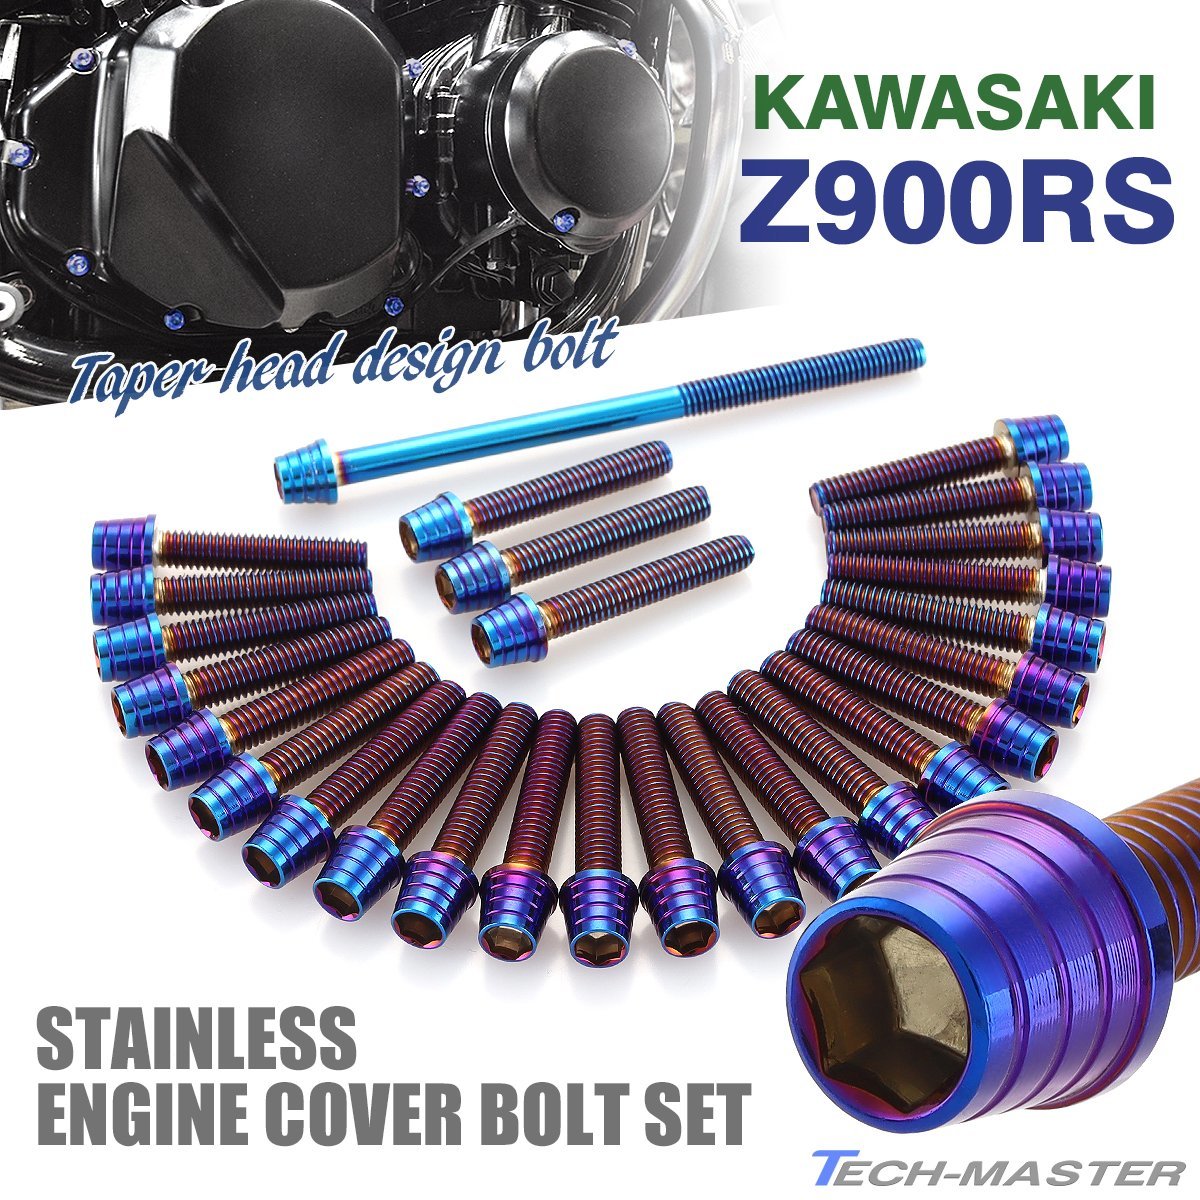 Z900RS エンジンカバーボルト 27本セット ステンレス製 テーパーシェルヘッド カワサキ車用 焼きチタンカラー TB8172_画像1